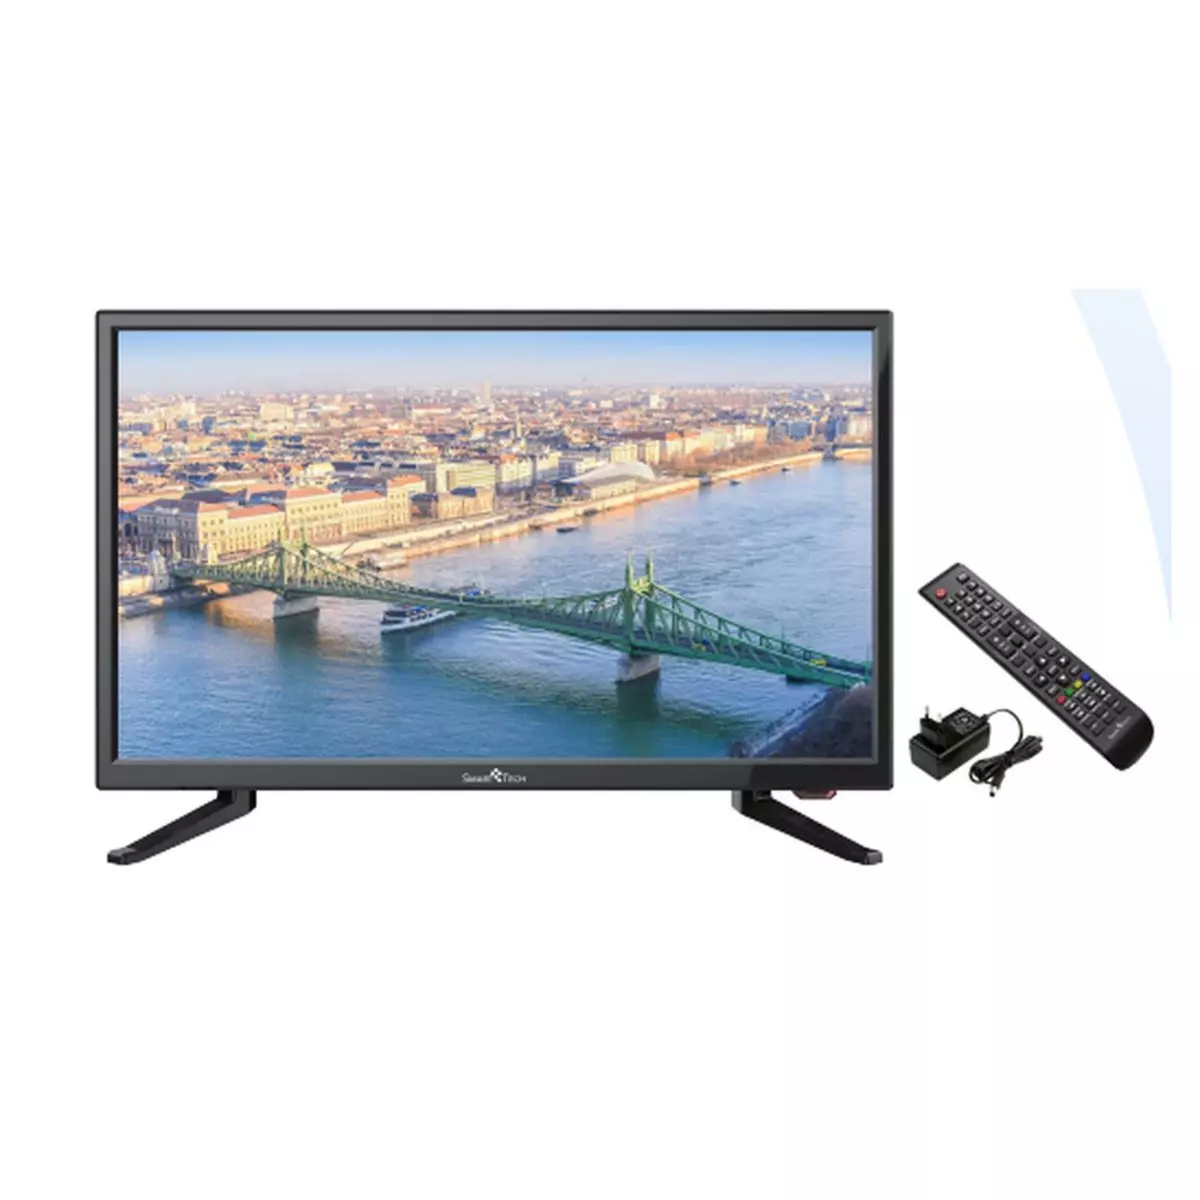 QILIVE Q32HS231B TV DLED HD 80 cm Smart TV pas cher 